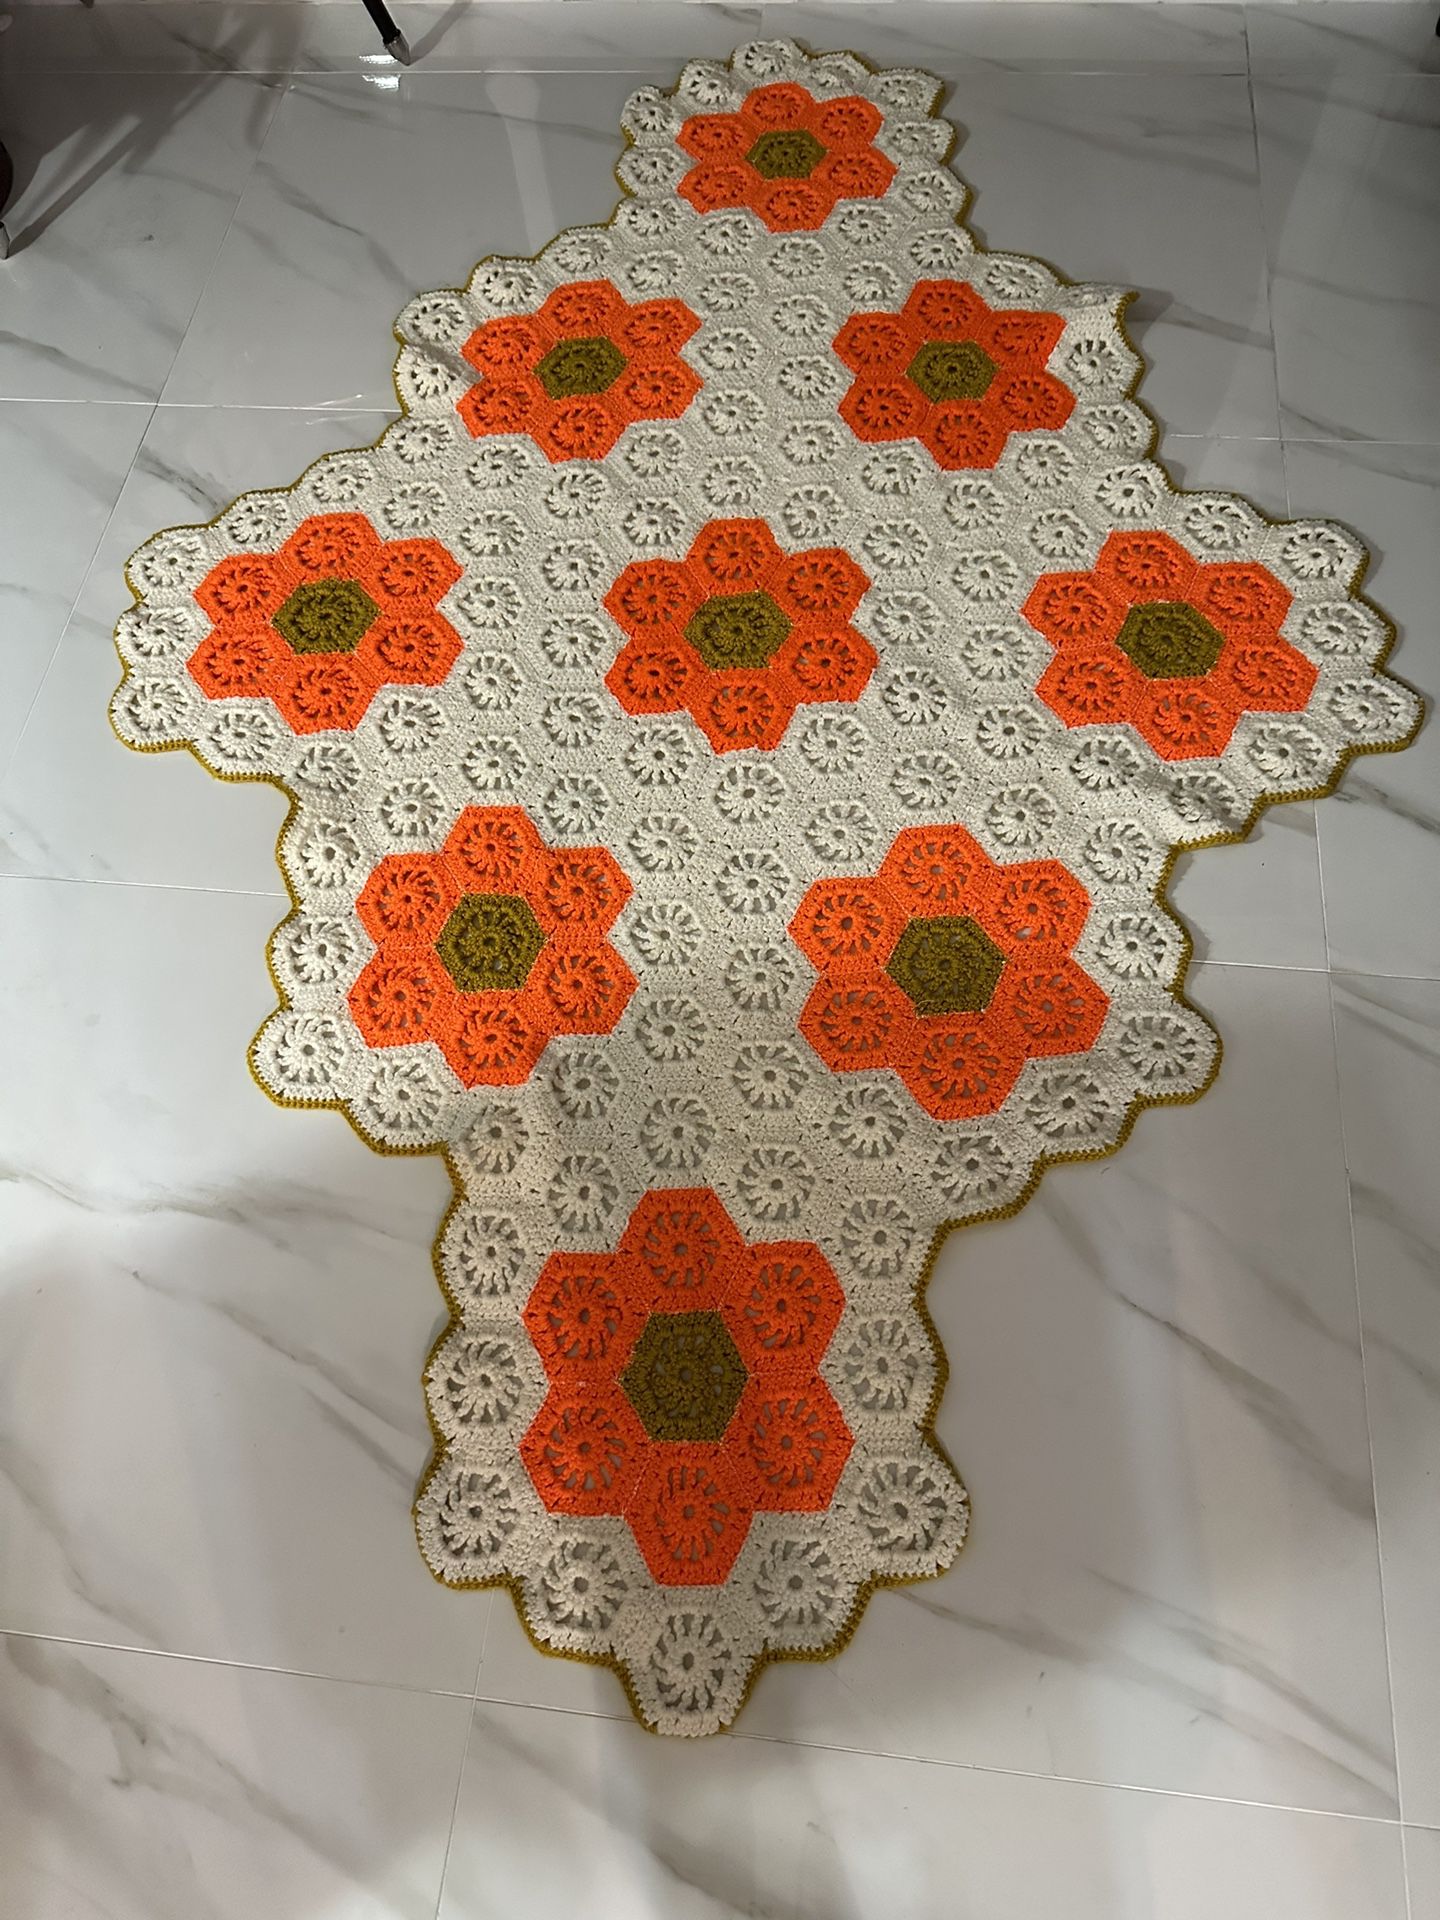 Hexagon flower crochet blanket handmade